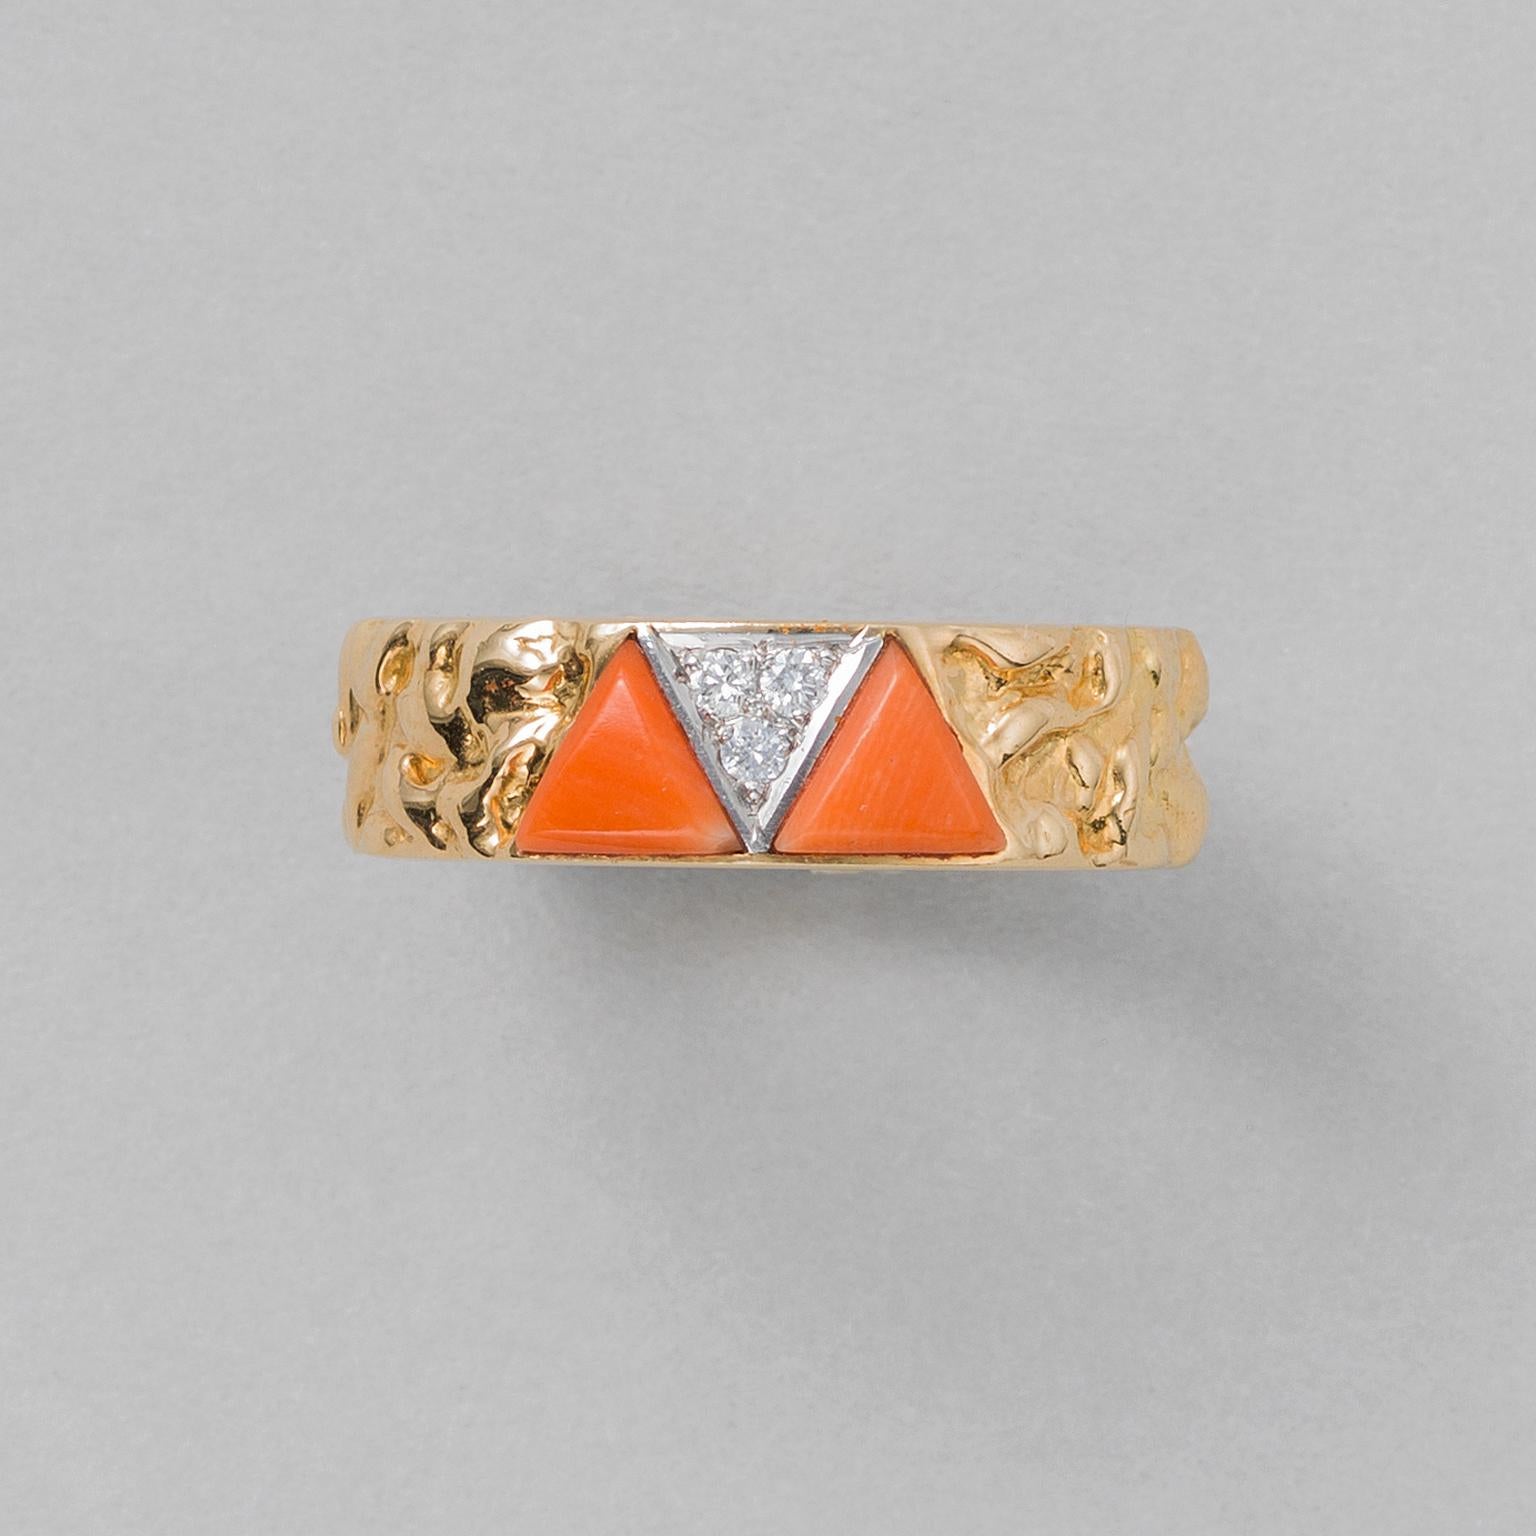 Bague à anneau en or 18 carats à texture irrégulière sertie de deux pièces triangulaires de corail avec entre les deux un triangle en platine posé en juxtaposition serti de trois diamants taille brillant, signée et numérotée : VCA NEW YORK, 862 1,